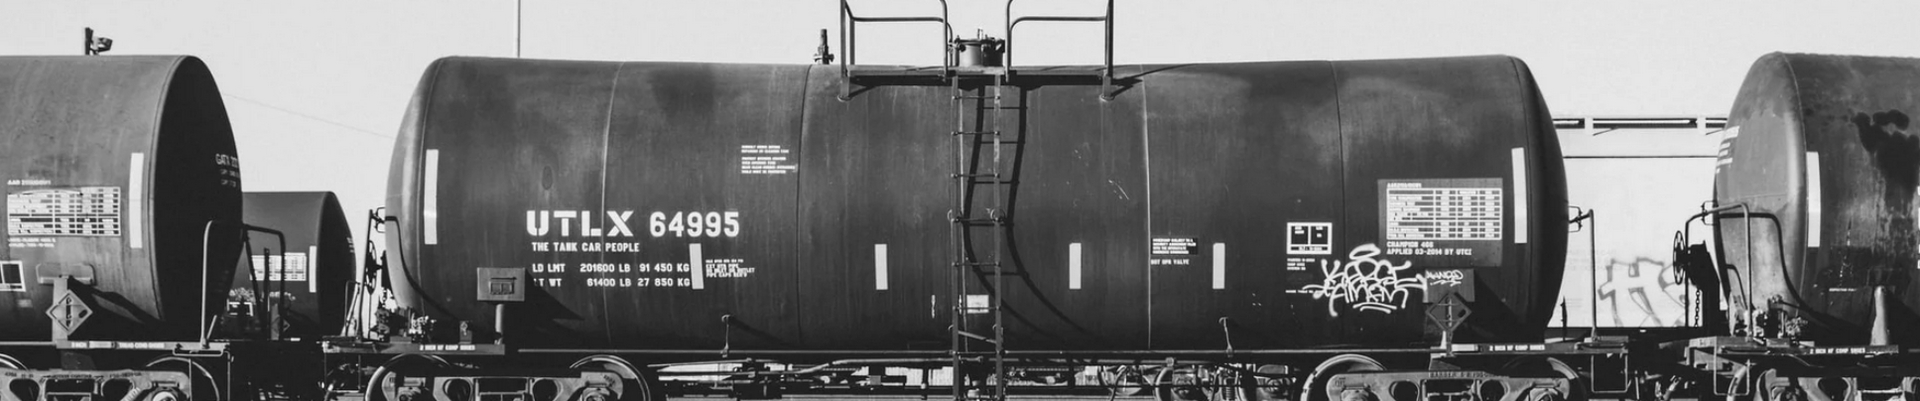 Maardu Raudtee AS pakub kaubaveo teenuseid Maardu piirkonnas asuvaid terminale ja ladusid ühendaval raudteel, hõlmates erinevaid kaupu nagu naftatooted, väetised, konteinerid jms.